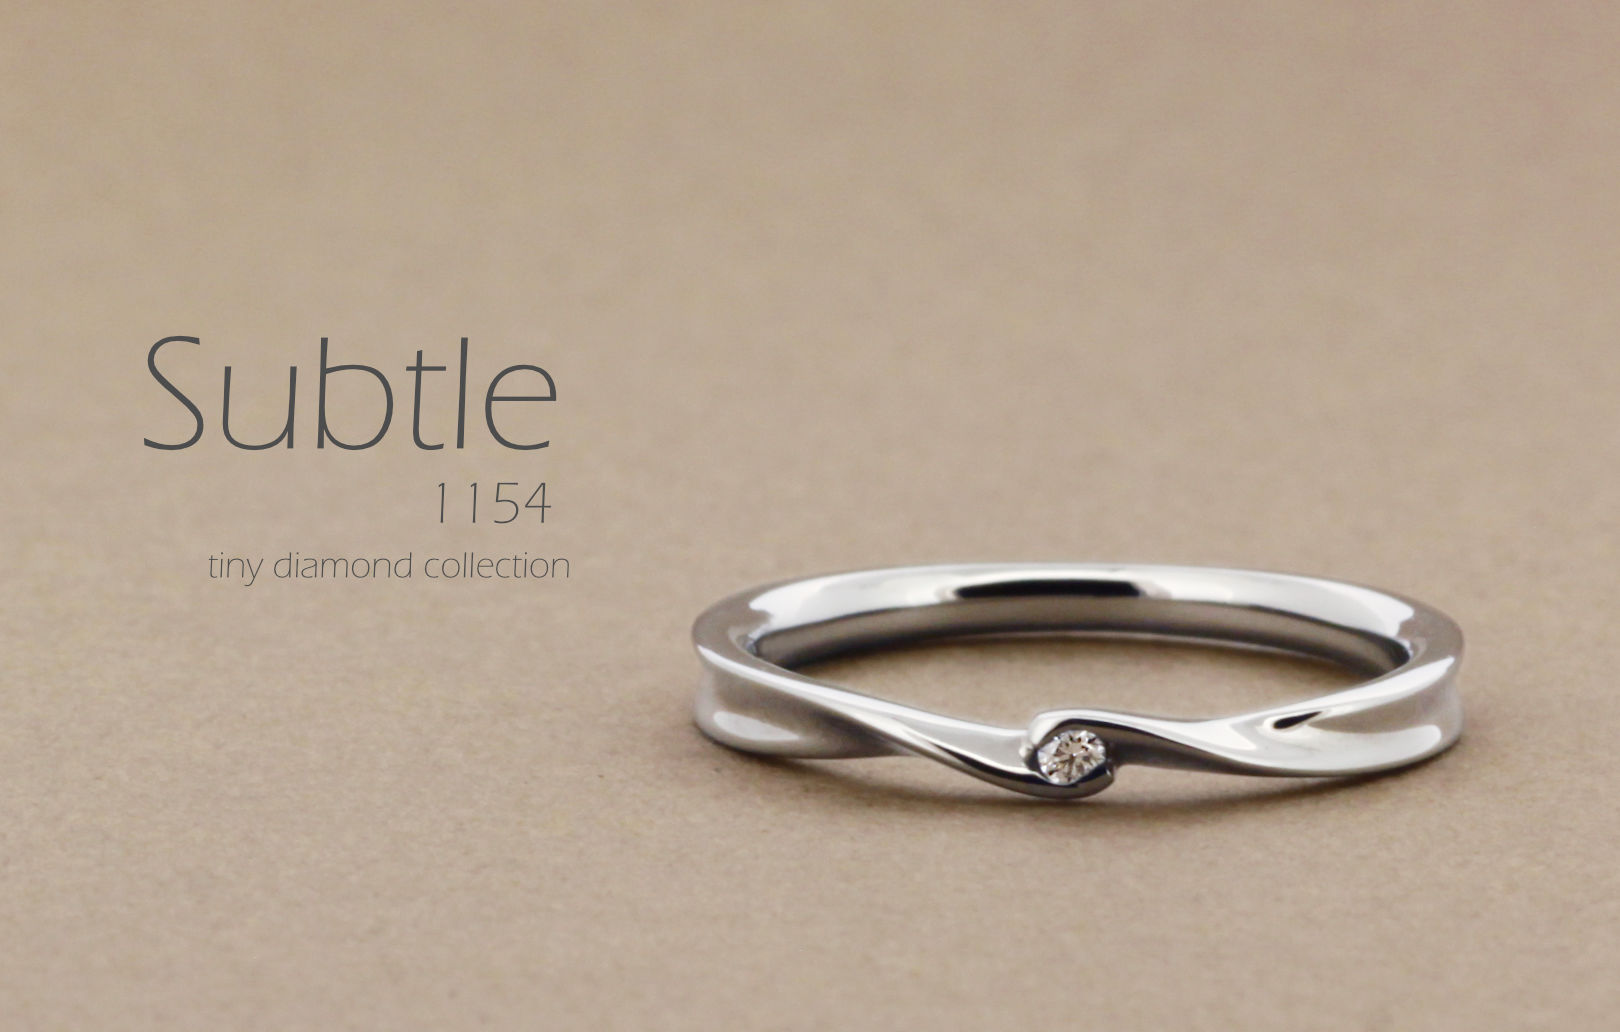 「Subtle」という名前がついた、リボンのようなひねりのあるアームに小さいダイヤを1粒留めた指輪の詳細ページ